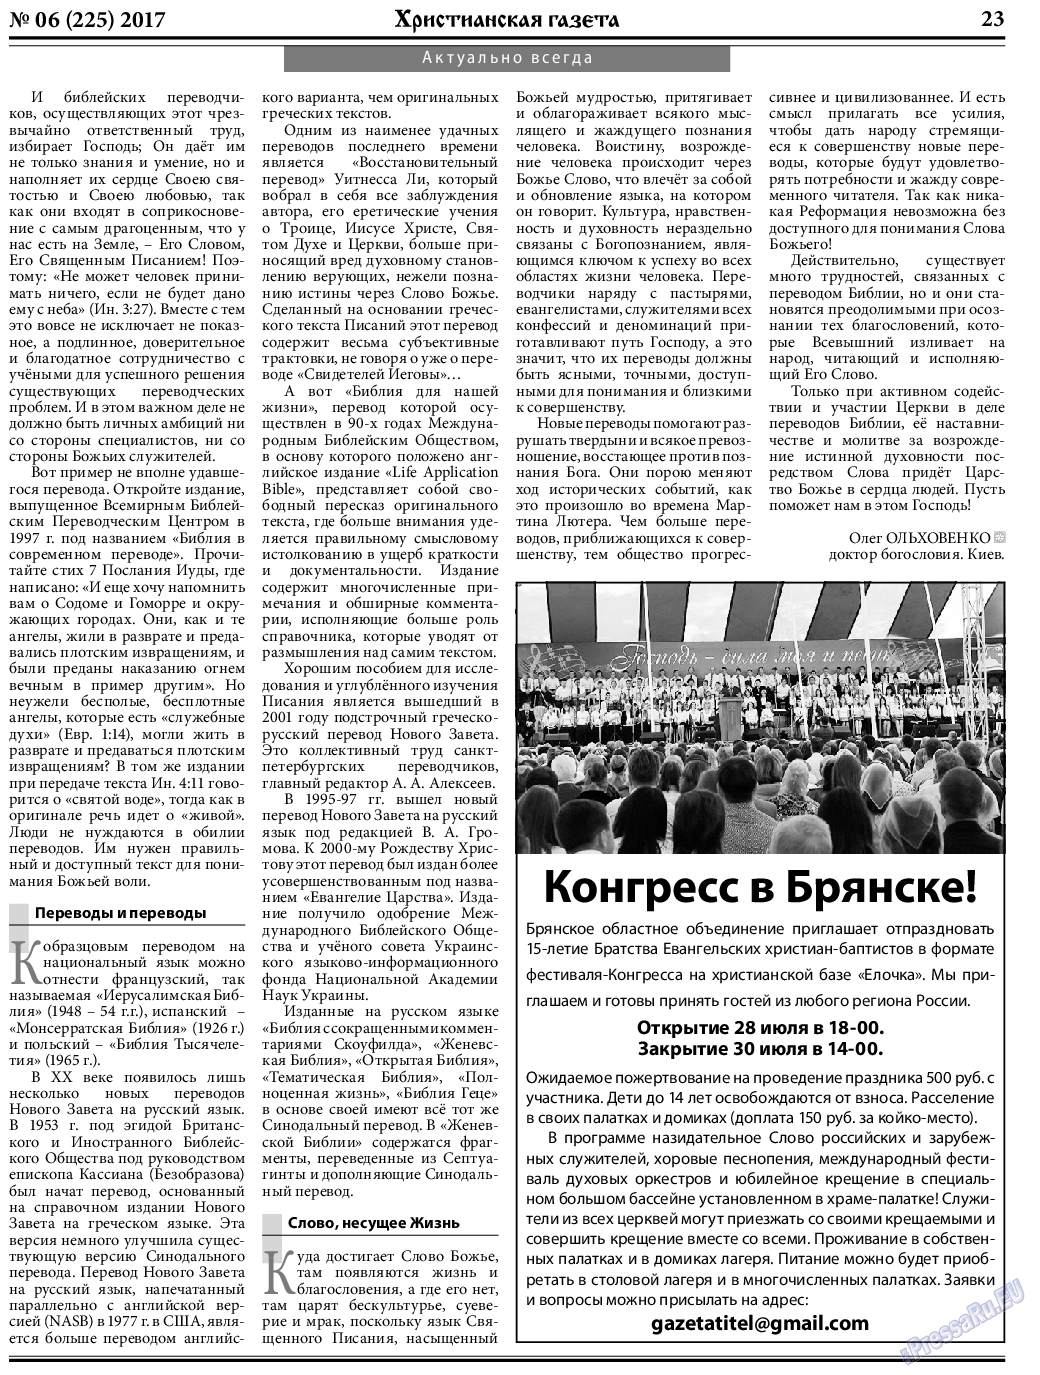 Христианская газета, газета. 2017 №6 стр.23